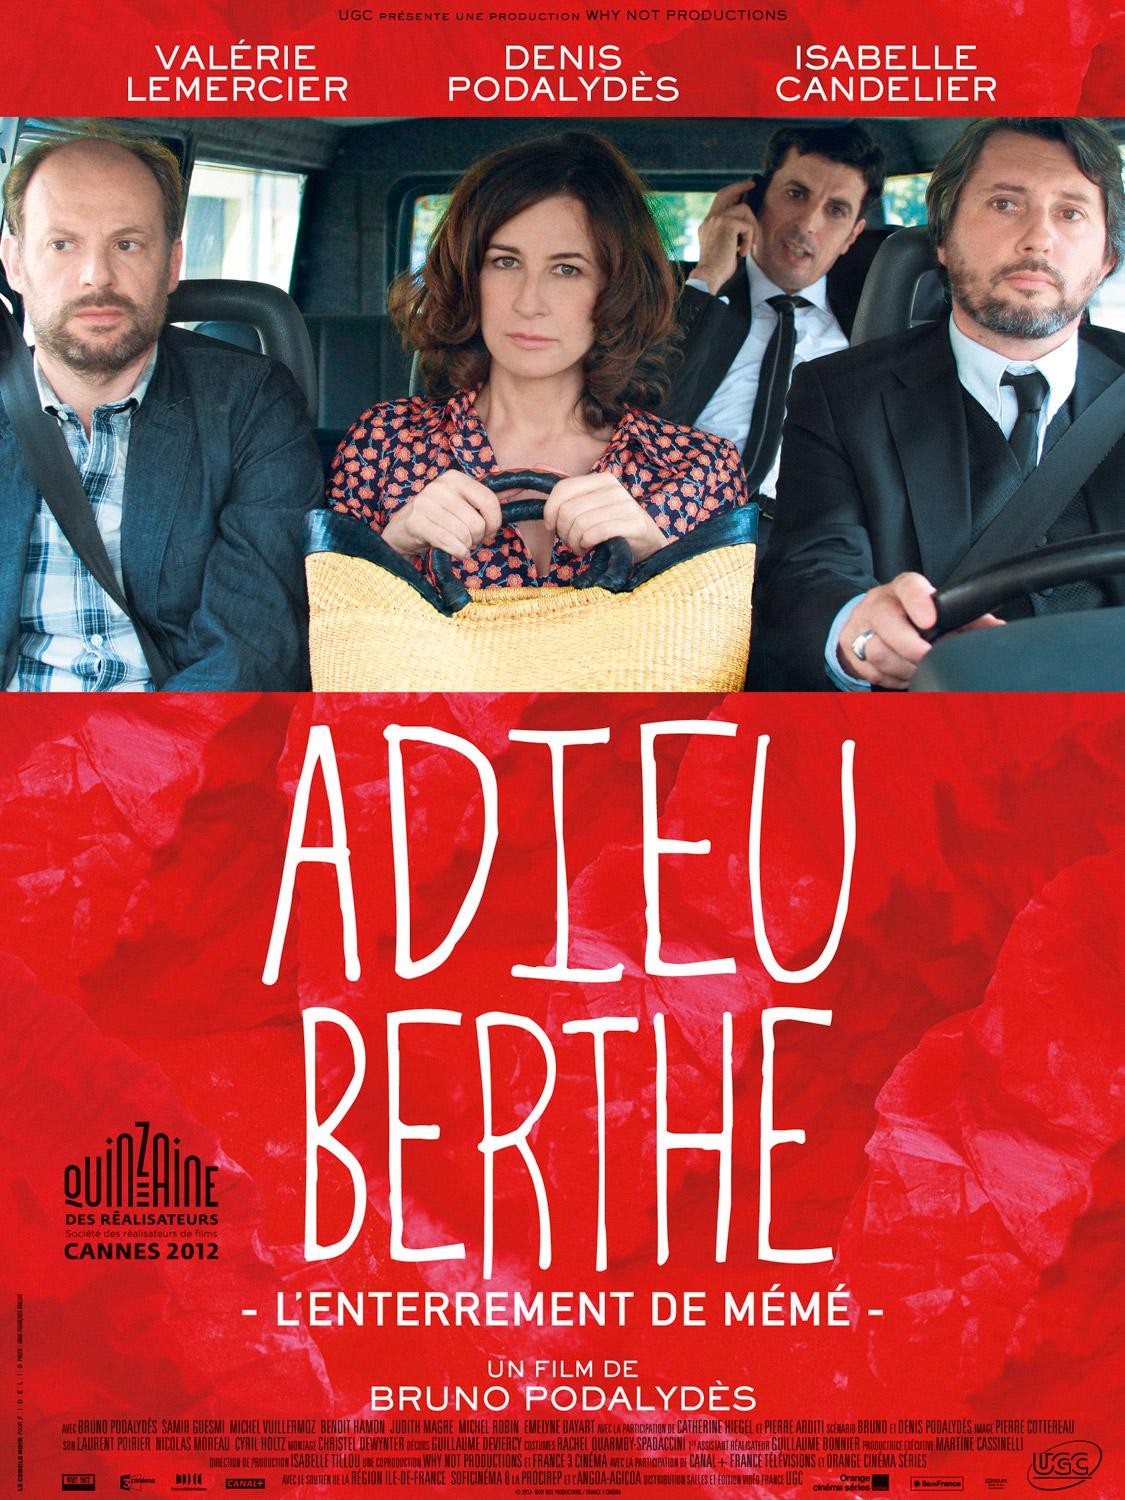 Extra Large Movie Poster Image for Adieu Berthe - L'enterrement de mémé 